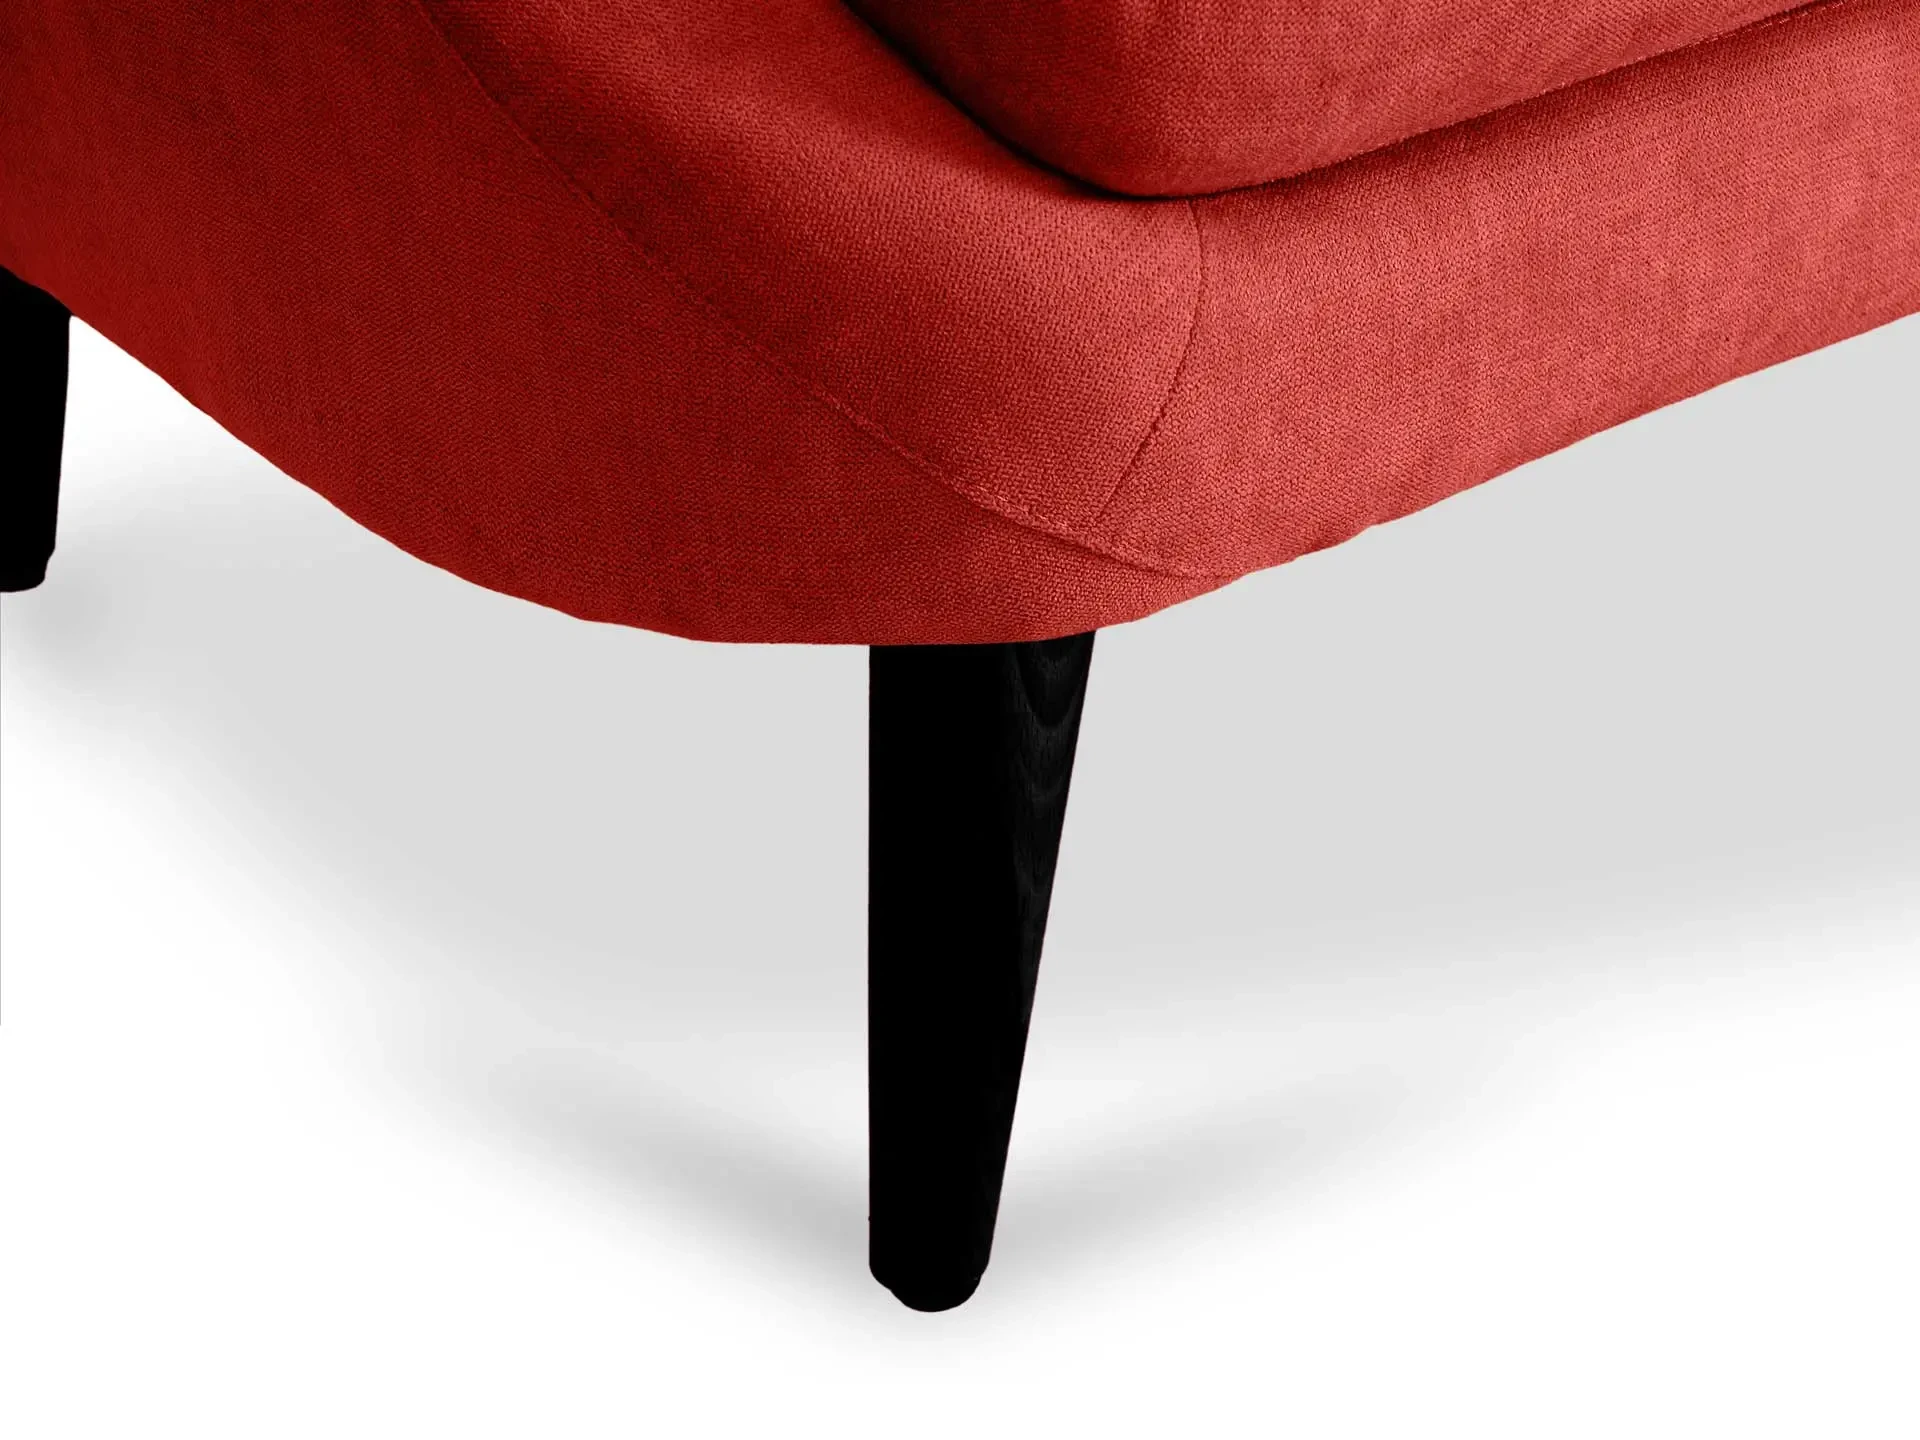 Кресло Corsica (bl) красный 644743